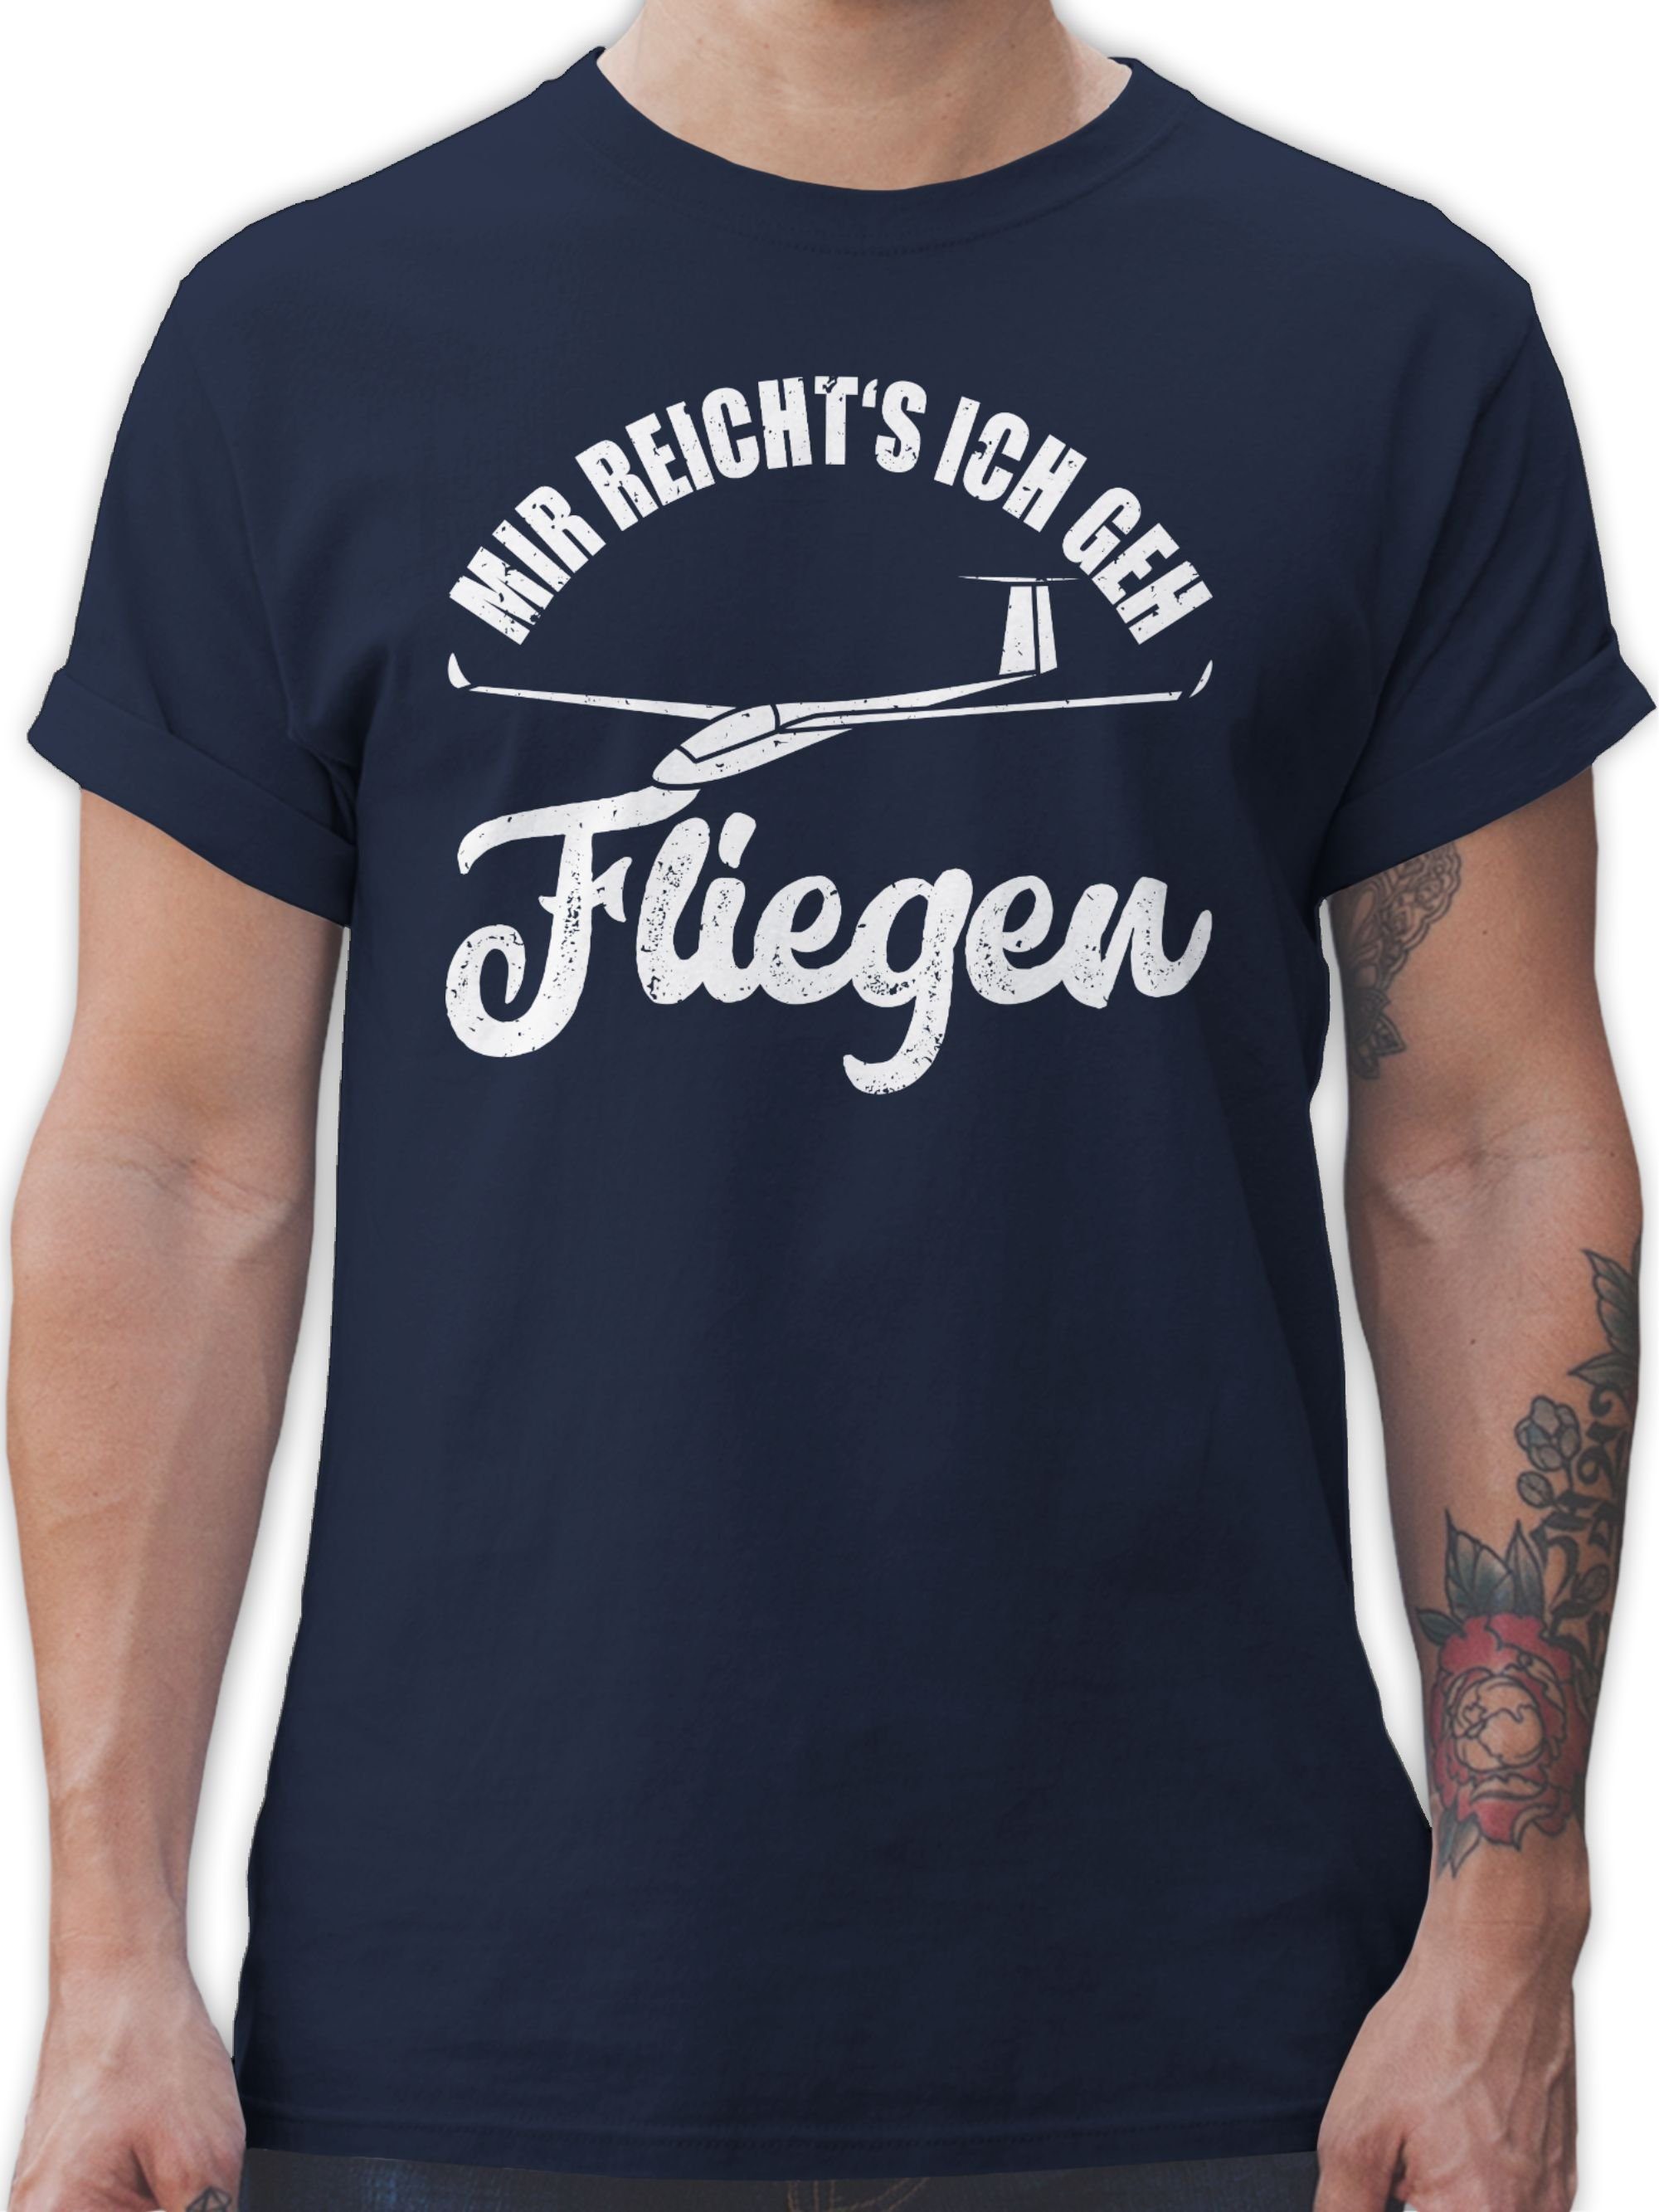 Shirtracer T-Shirt 01 Geschenke reicht's Mir Segelfliegen - und fliegen Job Beruf Sege Navy ich geh Geschenk Blau Segelflieger